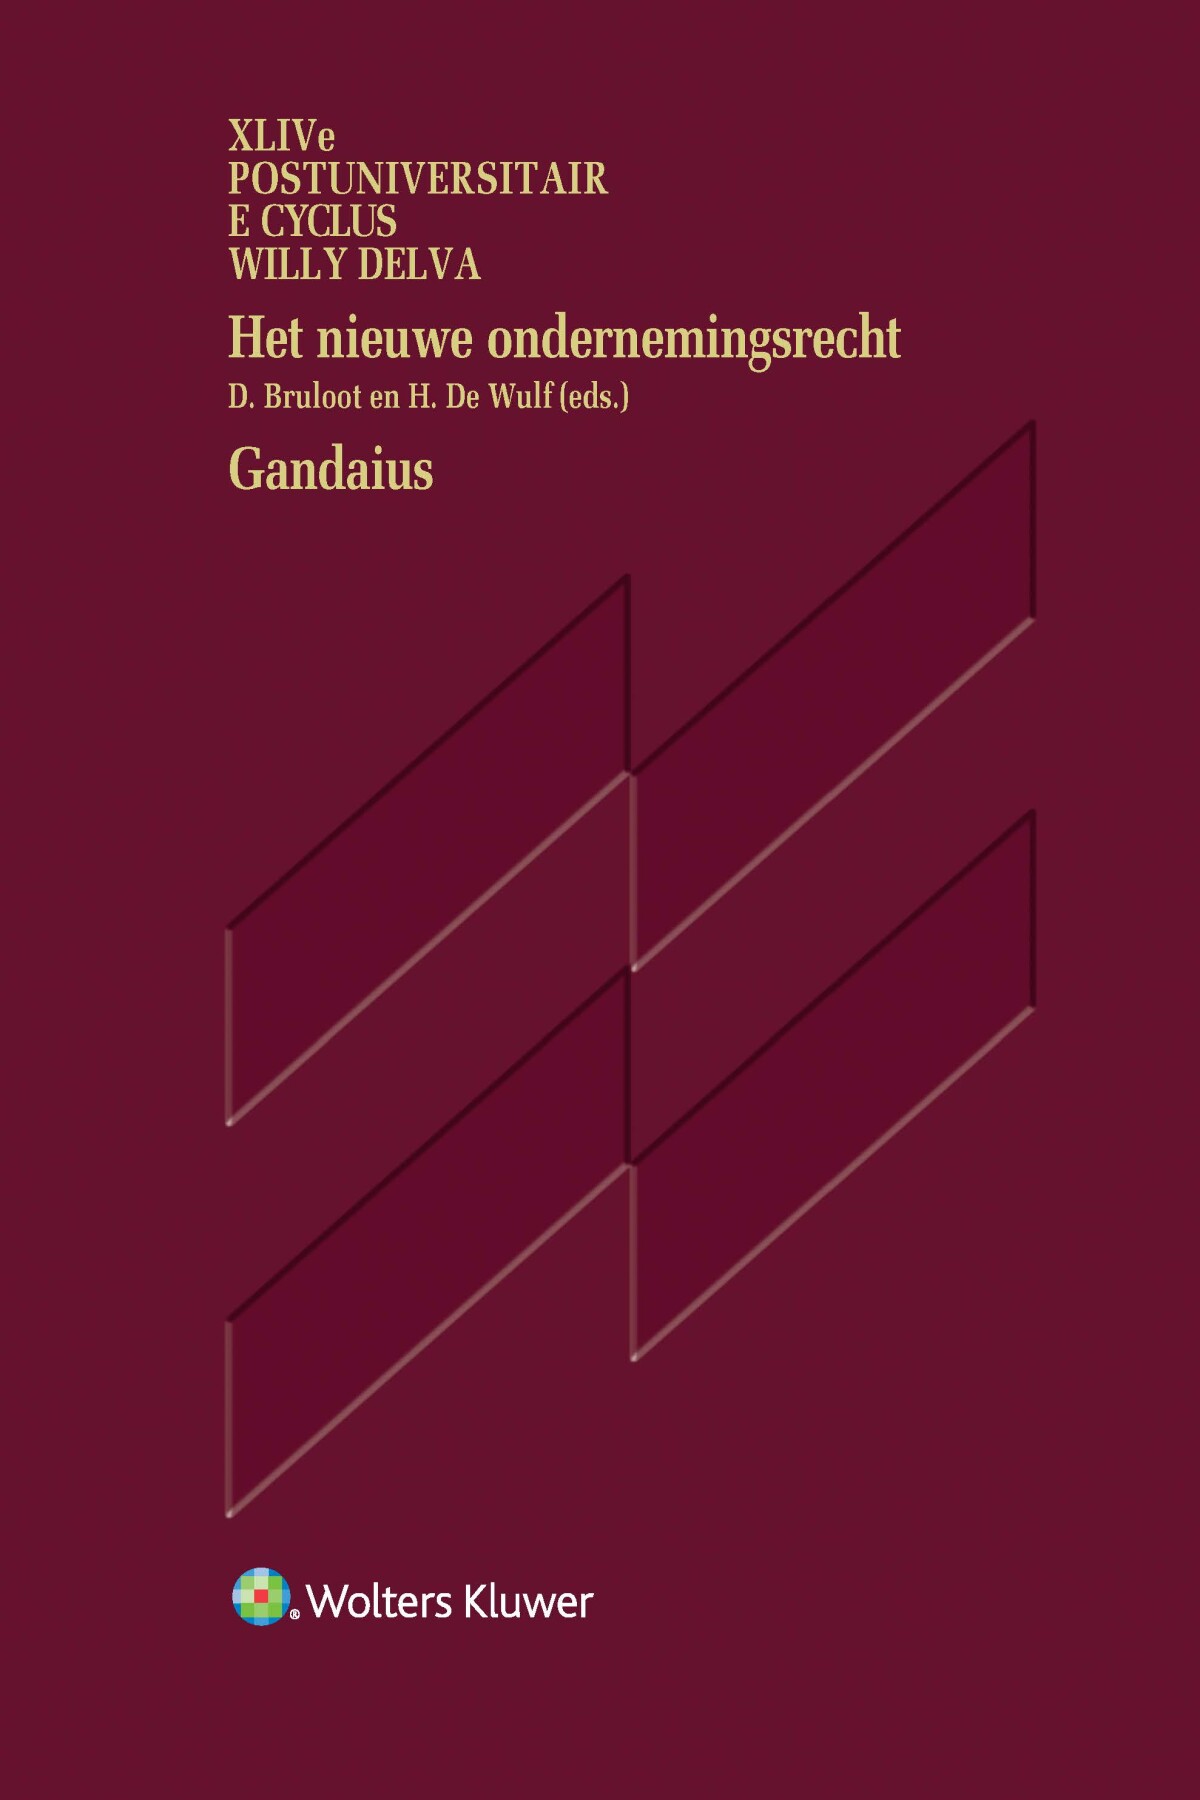 Het nieuwe ondernemingsrecht - Gandaius - XLIVe Postuniversitaire cyclus Willy Delva